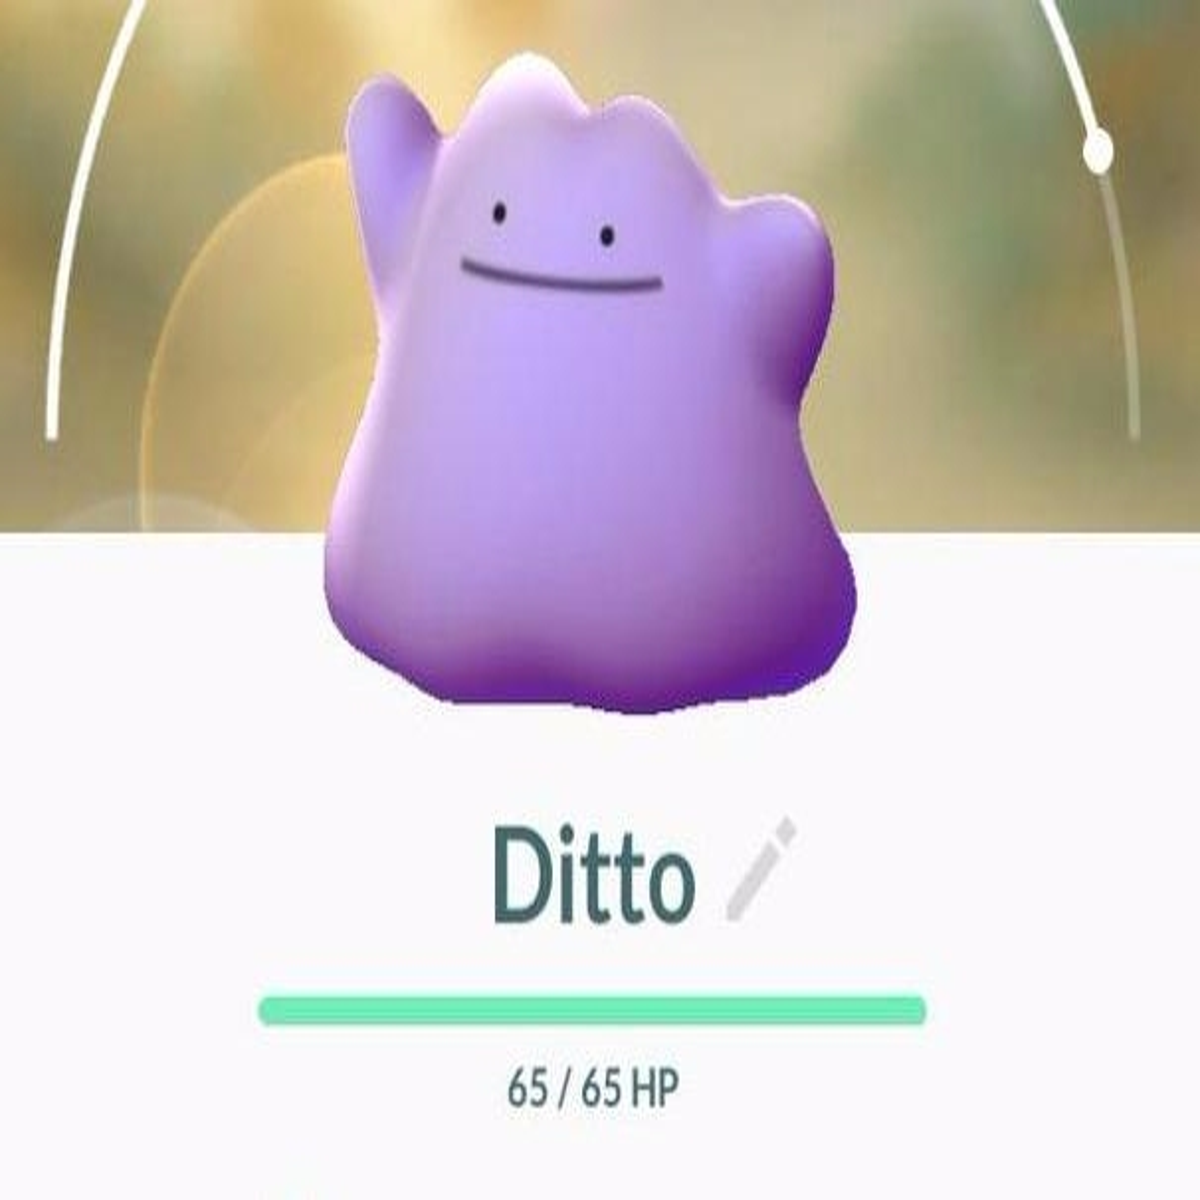 Pokémon GO BR on X: 🔍 Procurando Ditto como se não houvesse